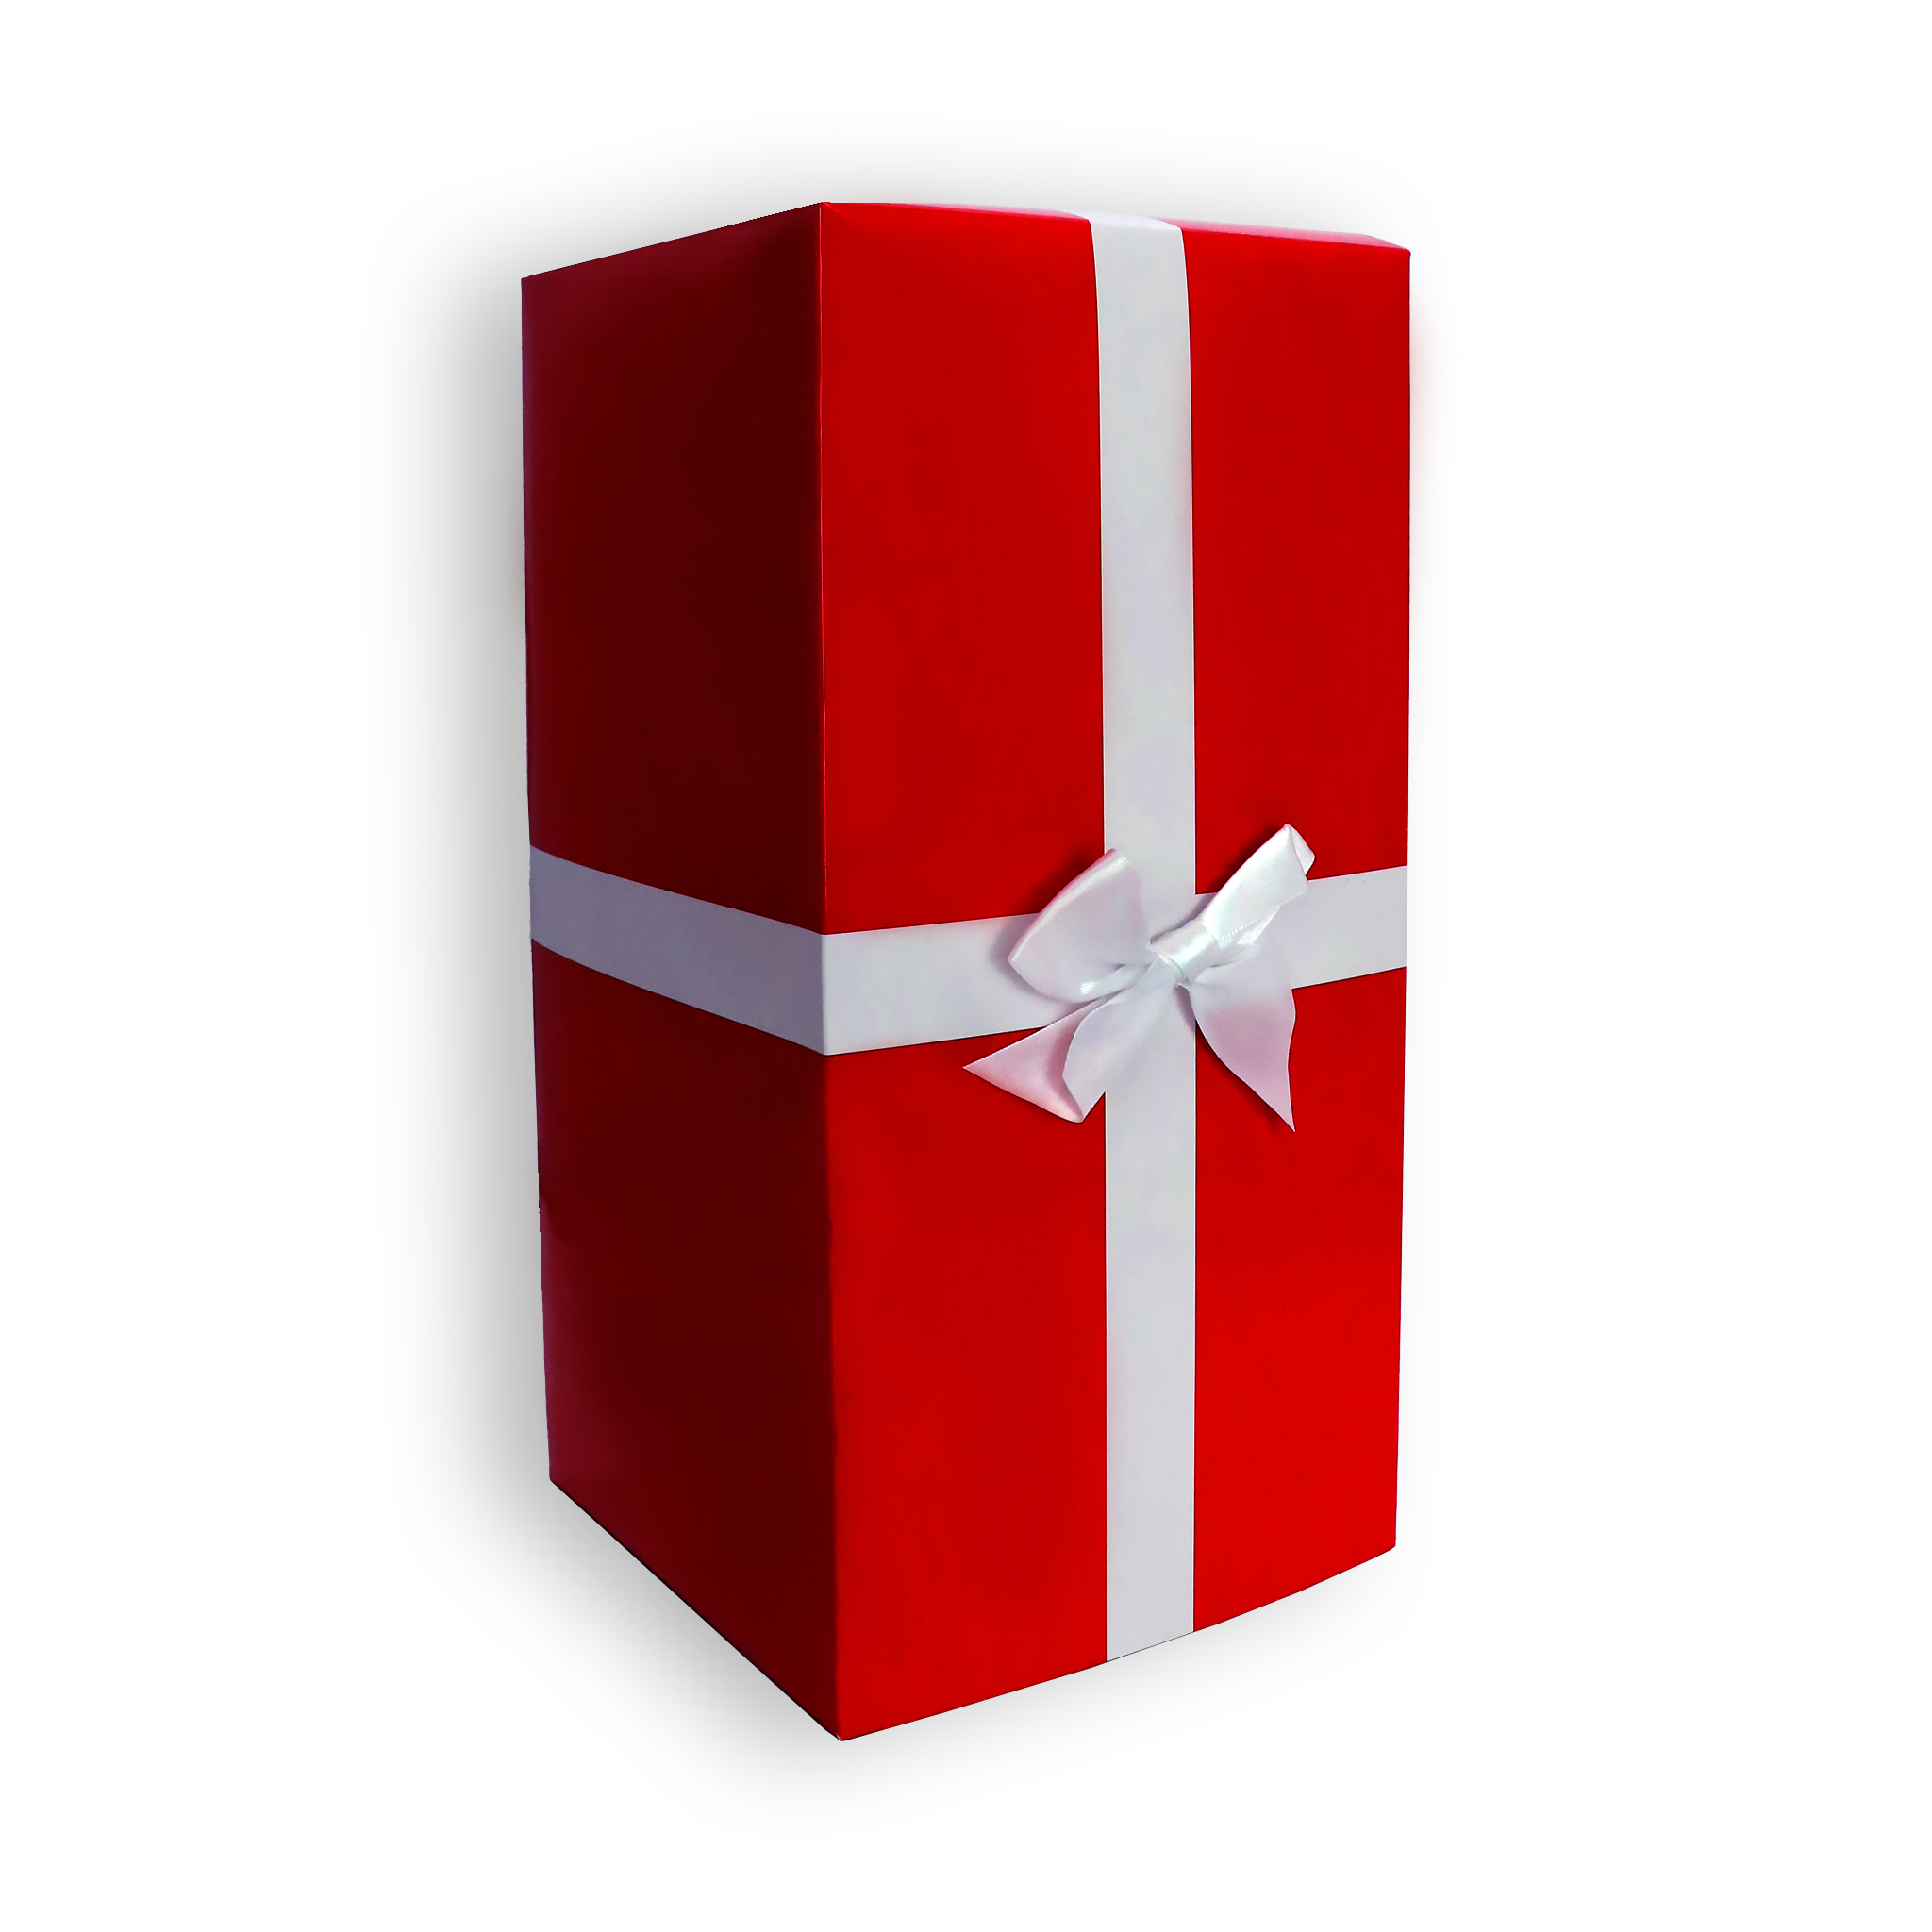 Gift Wrap Box